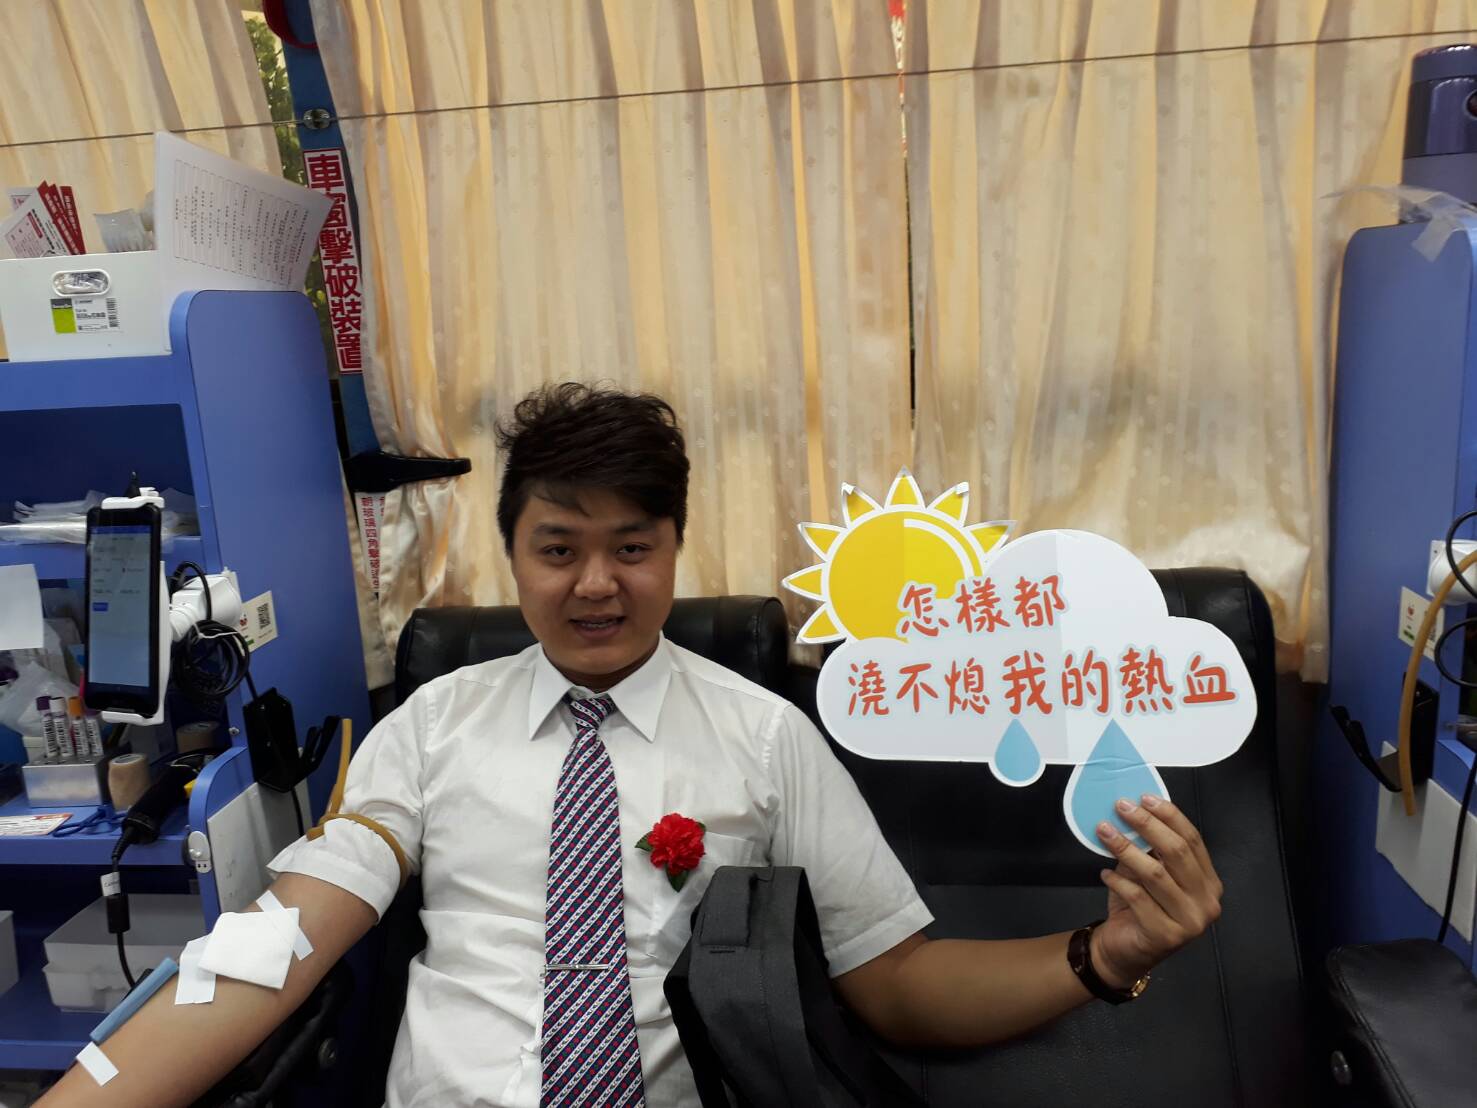 捐血加碼送好禮獲佳評 葛瑪蘭客運感謝熱情參與